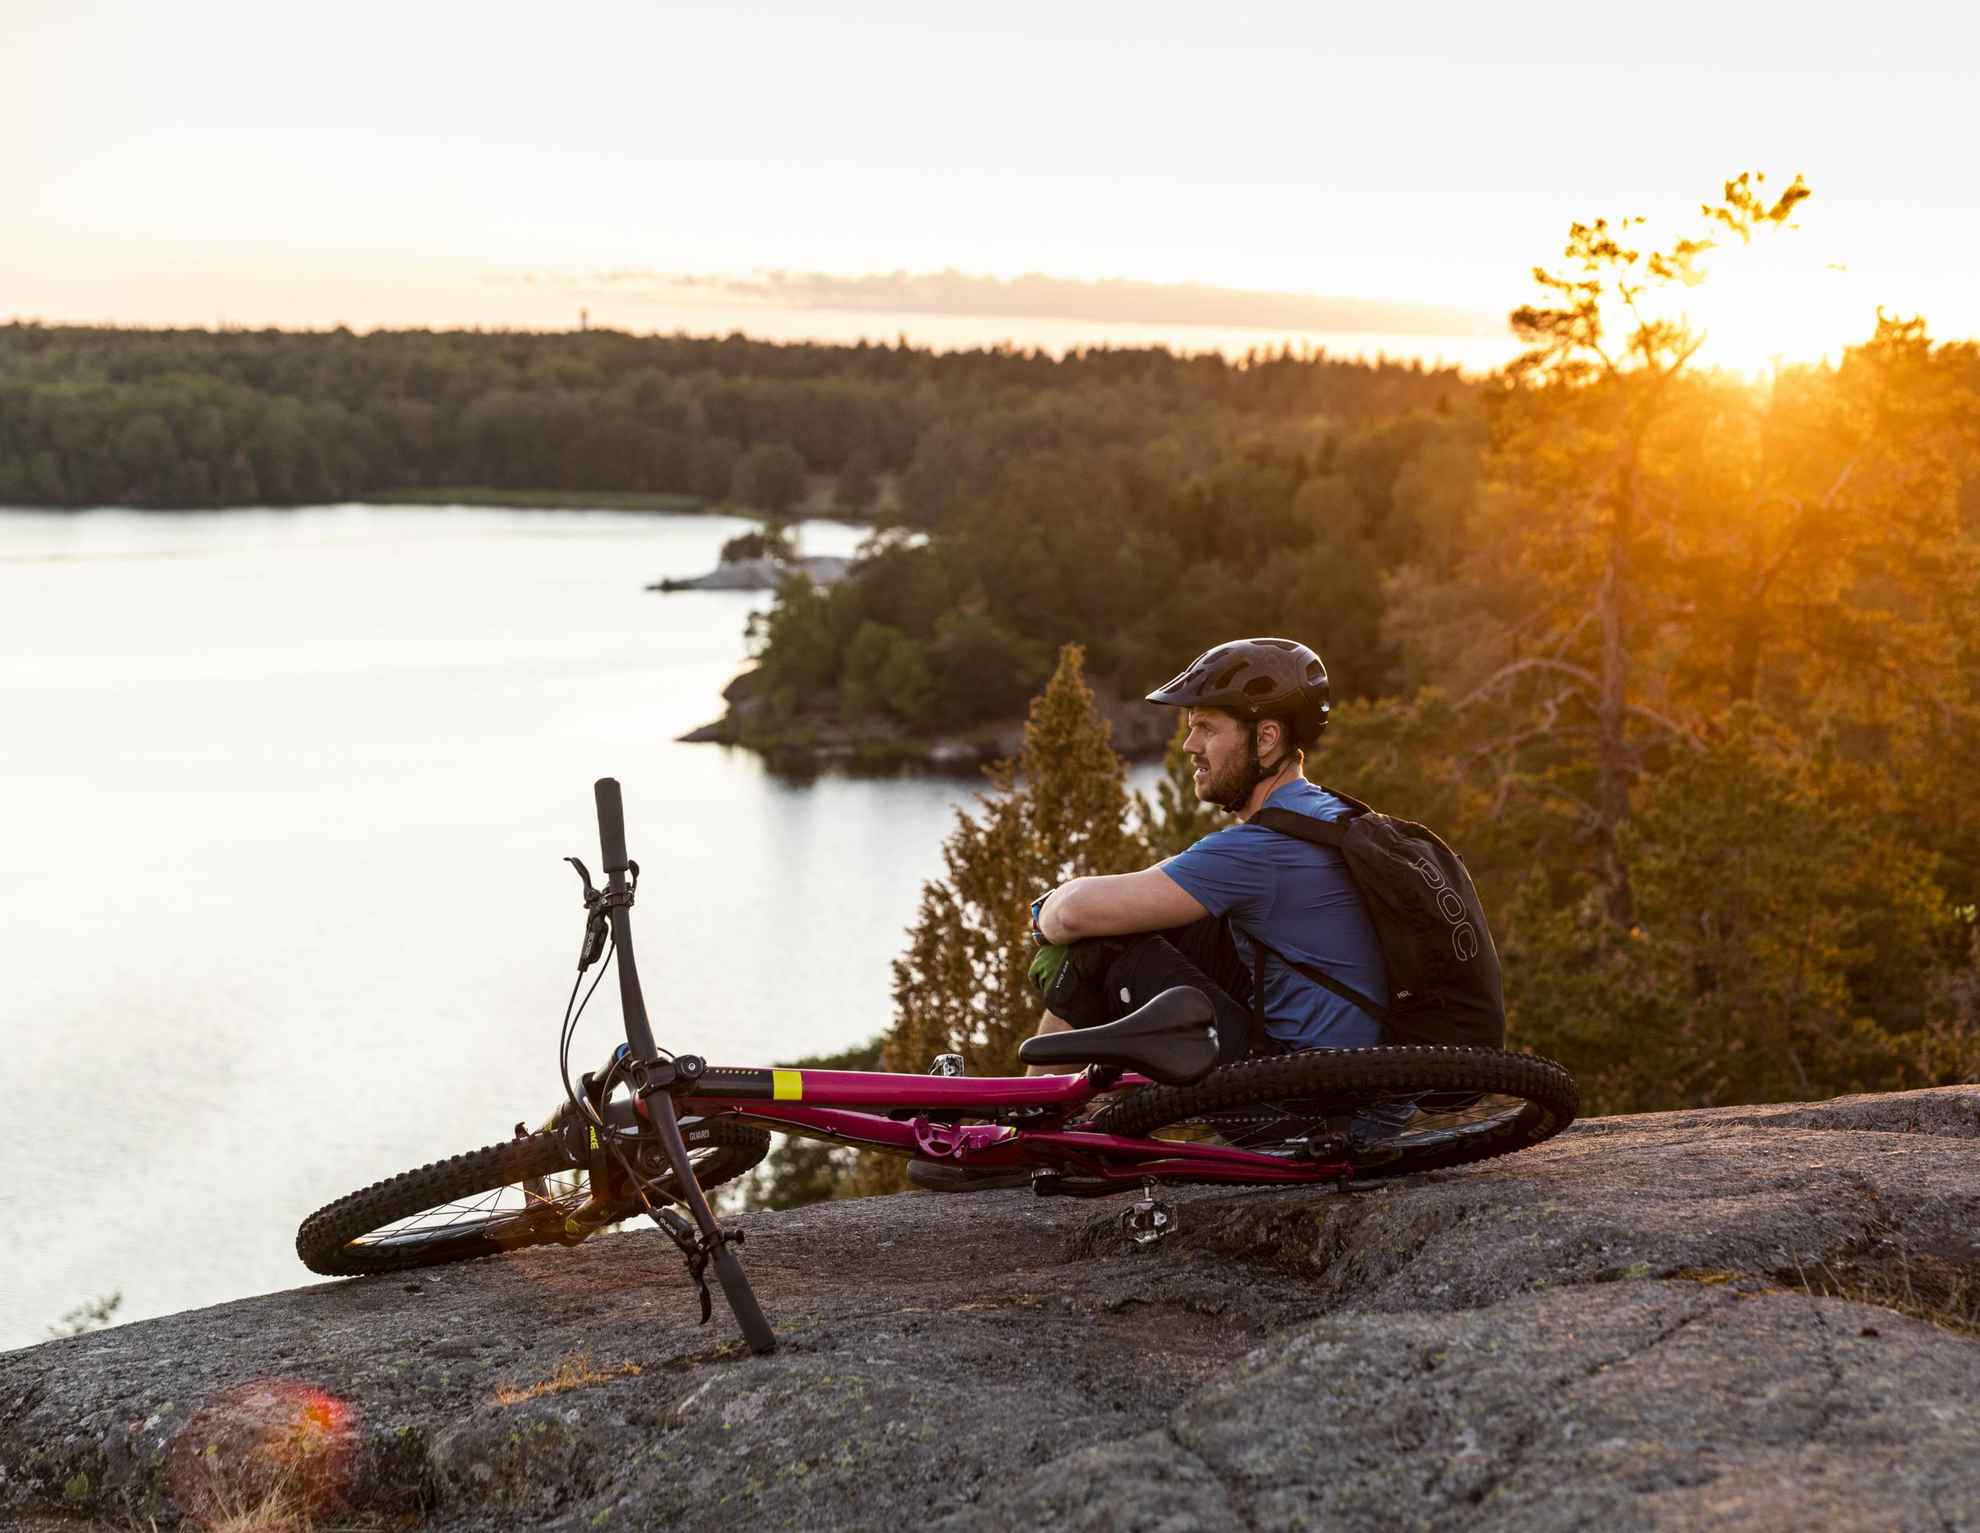 Ein Fahrradfahrer mit Helm sitzt auf einem Felsen, neben ihm sein Rad. Er blickt auf einen von Wald umgebenen See. Die Sonne geht unter.